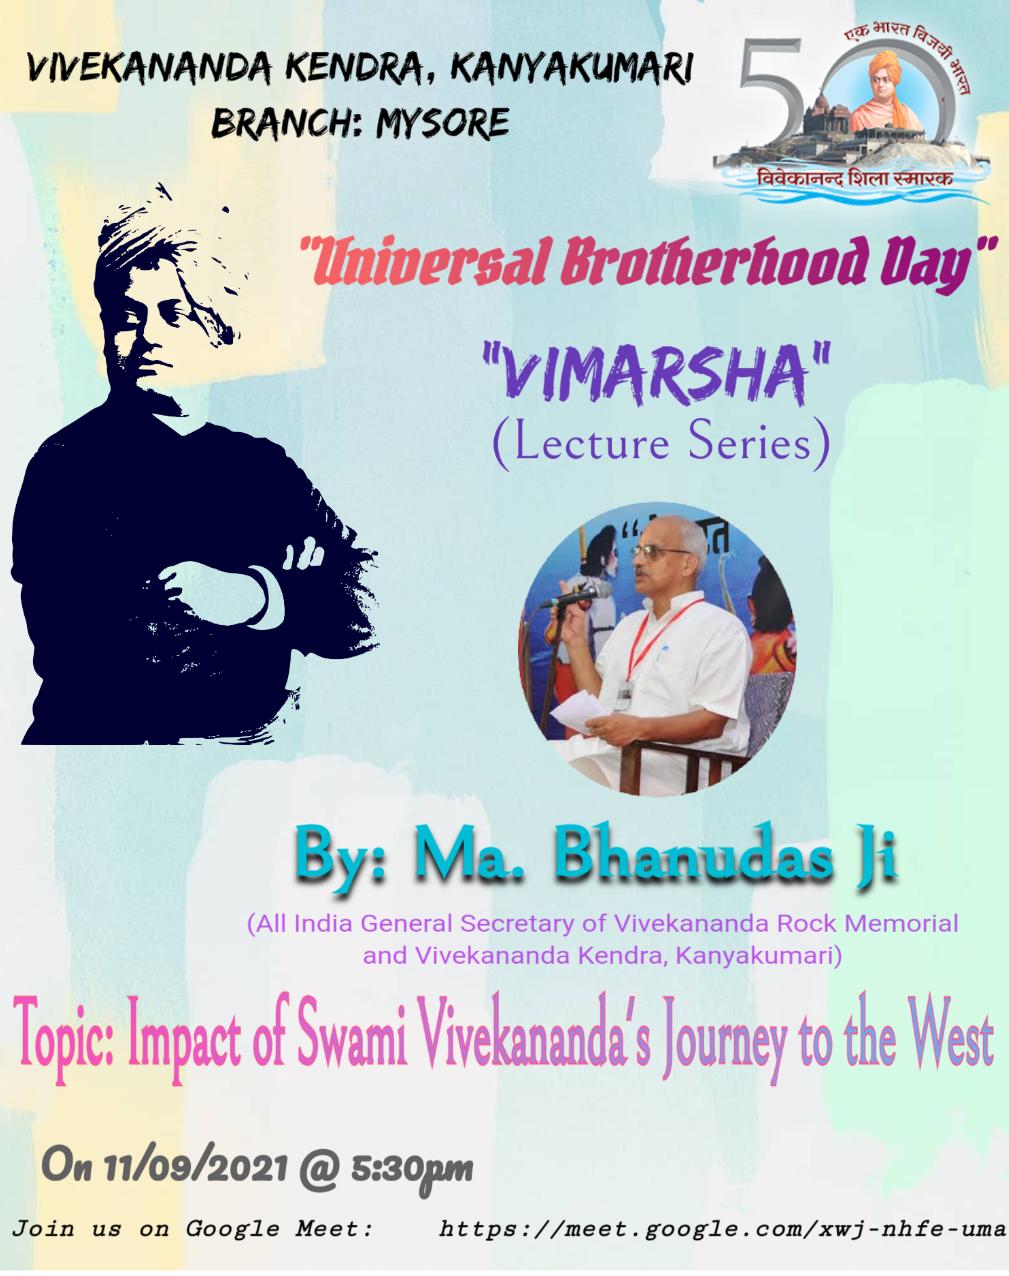 Vimarsha (Lecture Series) on the occasion of Universal Brotherhood Day -Karnataka